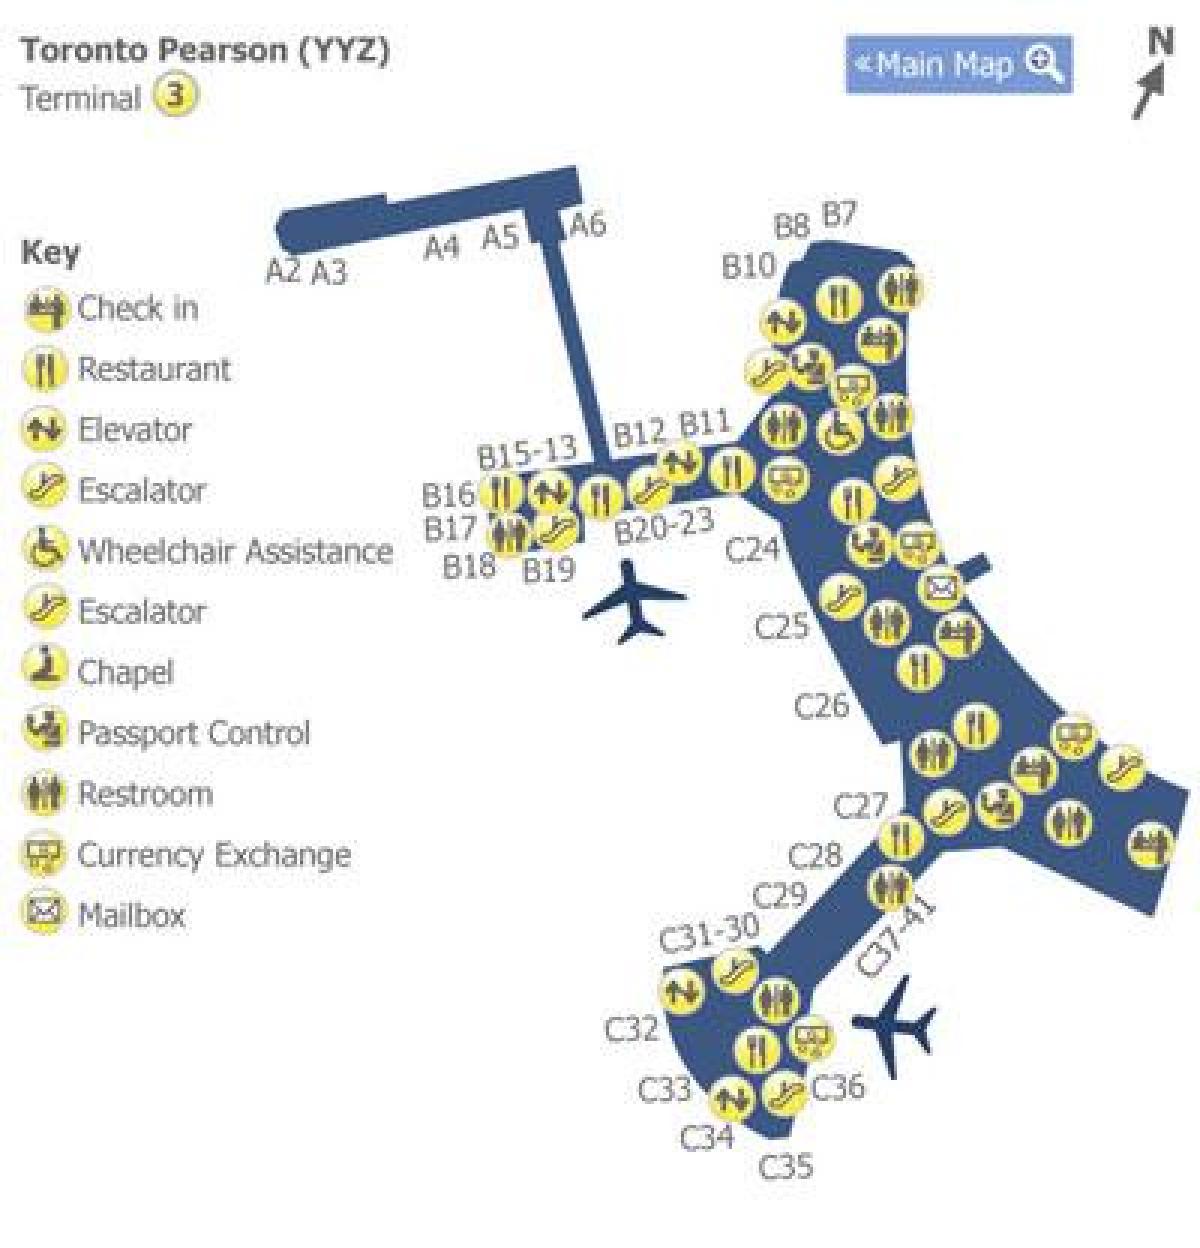 Carte terminal 3 aéroport Pearson Toronto